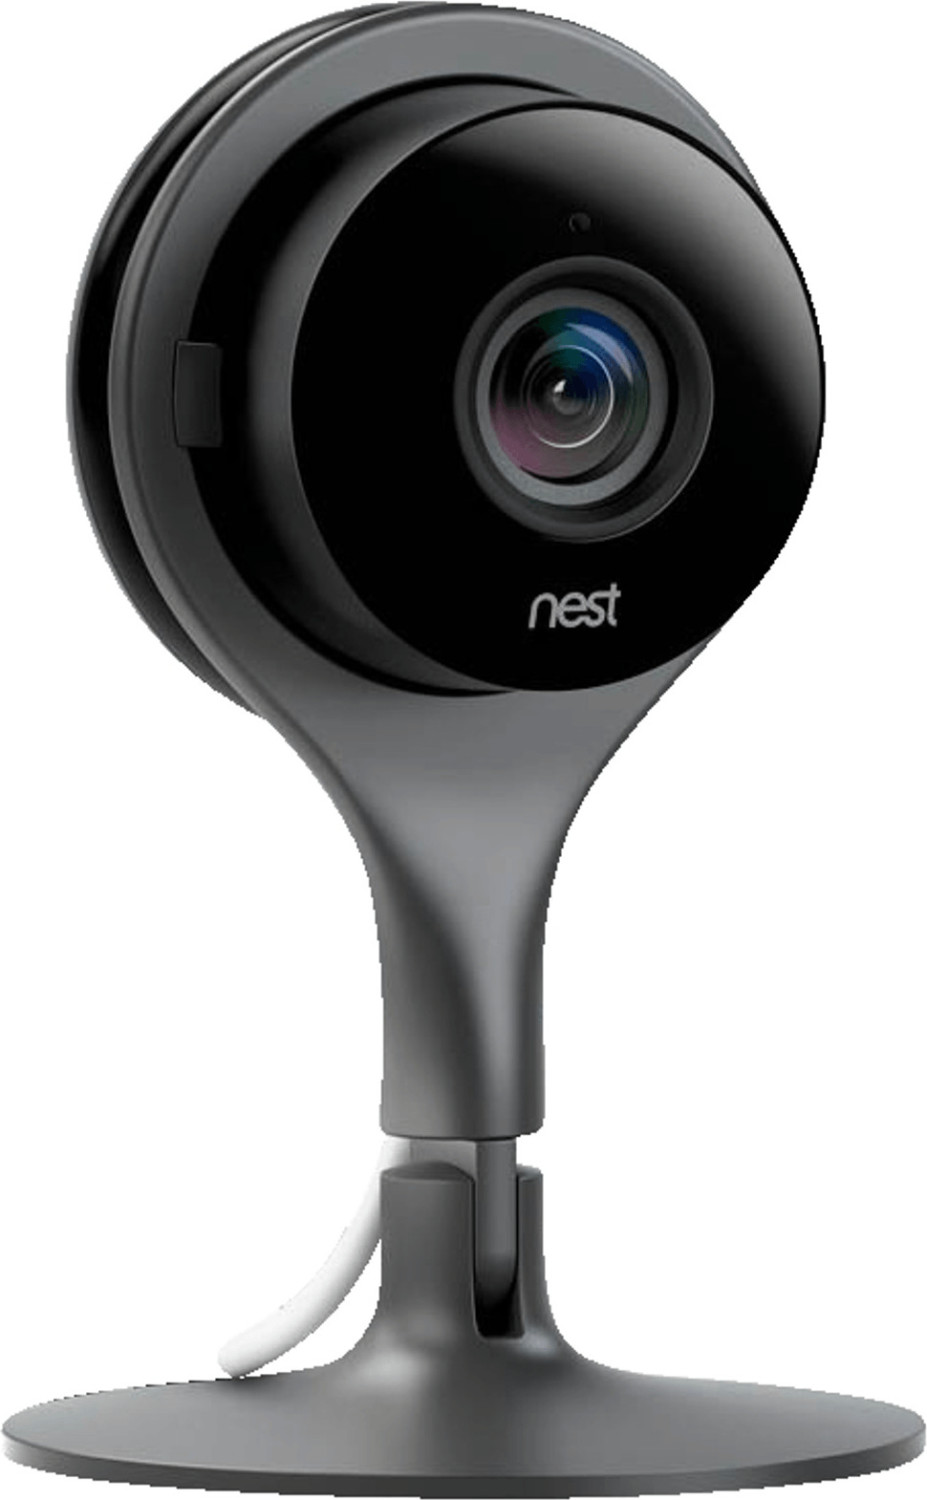 Bild zu Nest Indoor Überwachungskamera für 109,95€ (Vergleich: 179,95€)